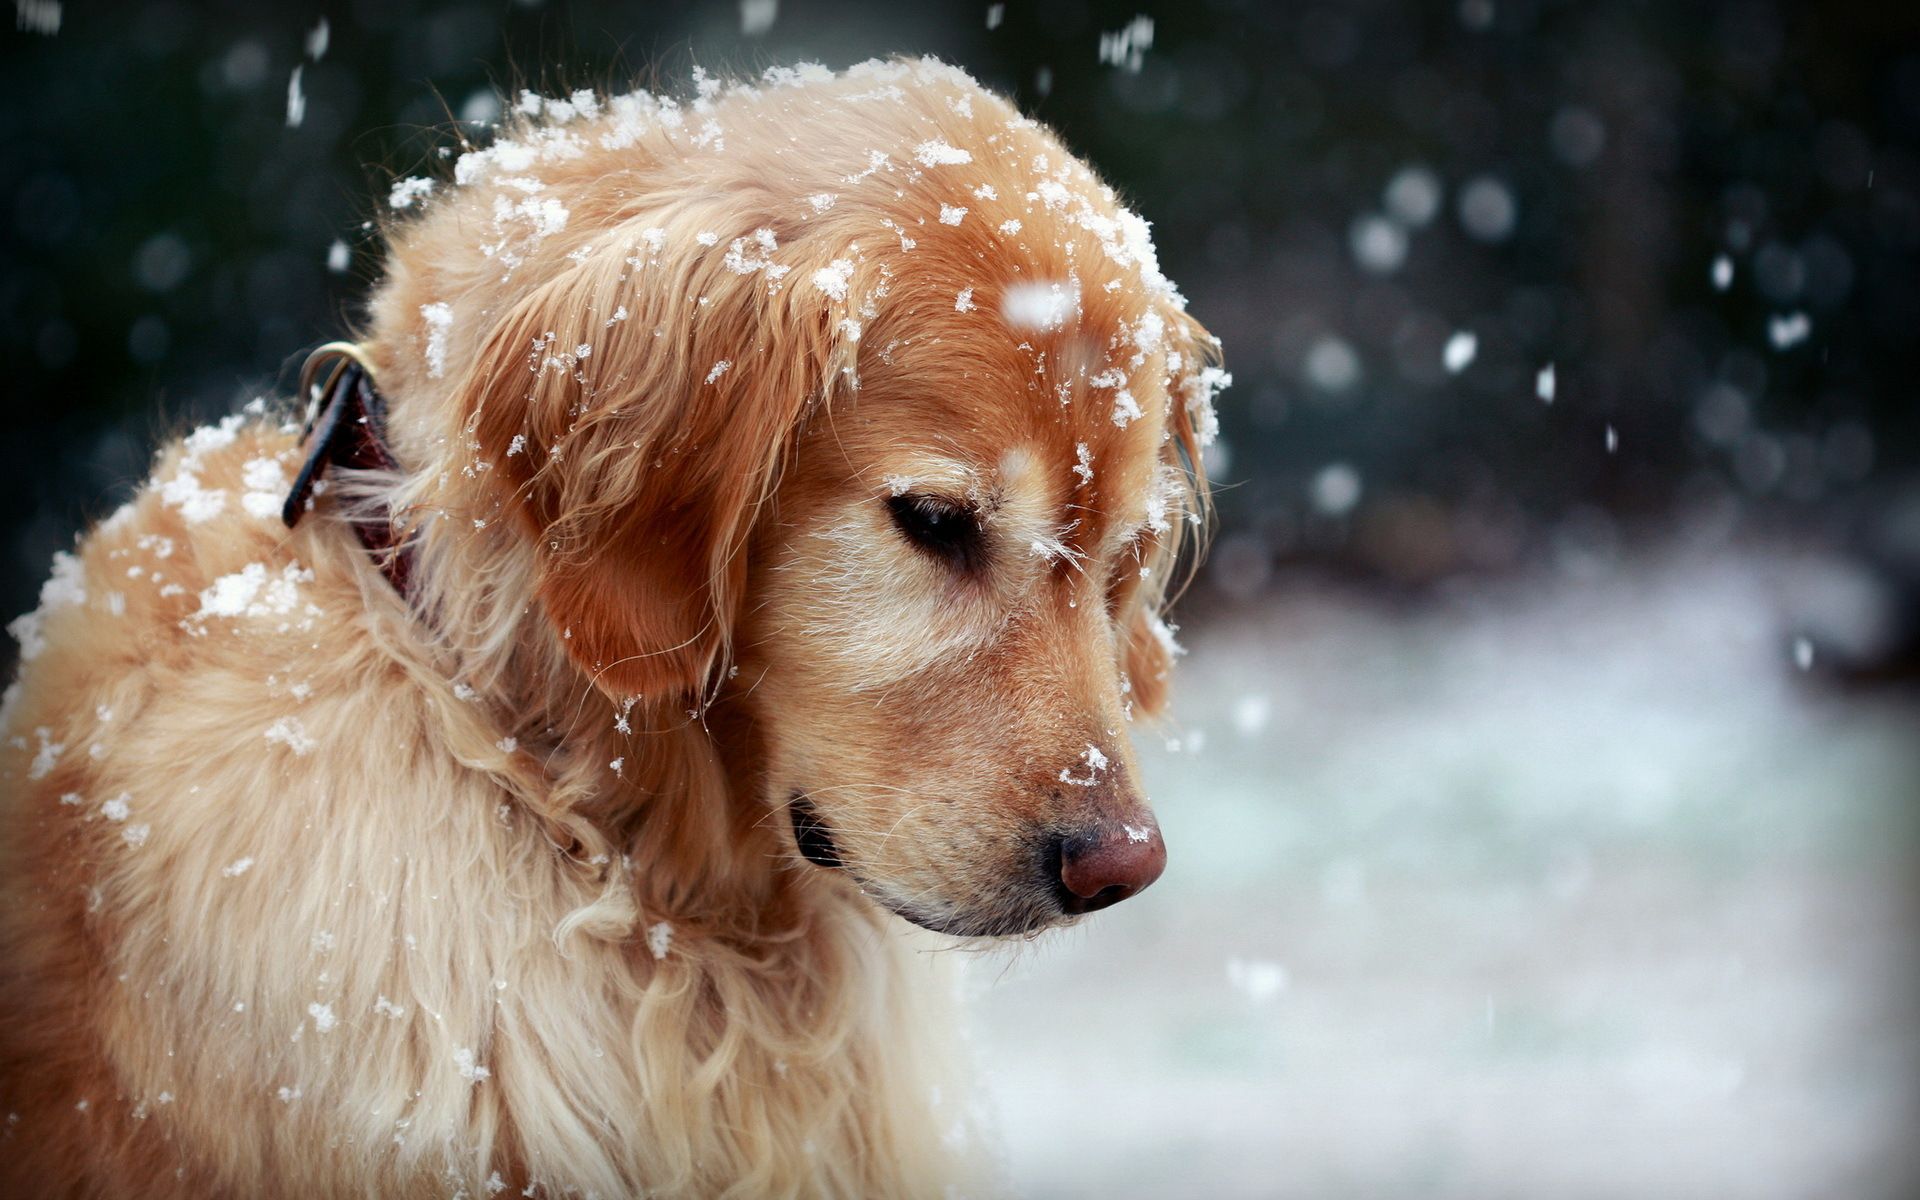 Cute Winter Puppy Wallpaper